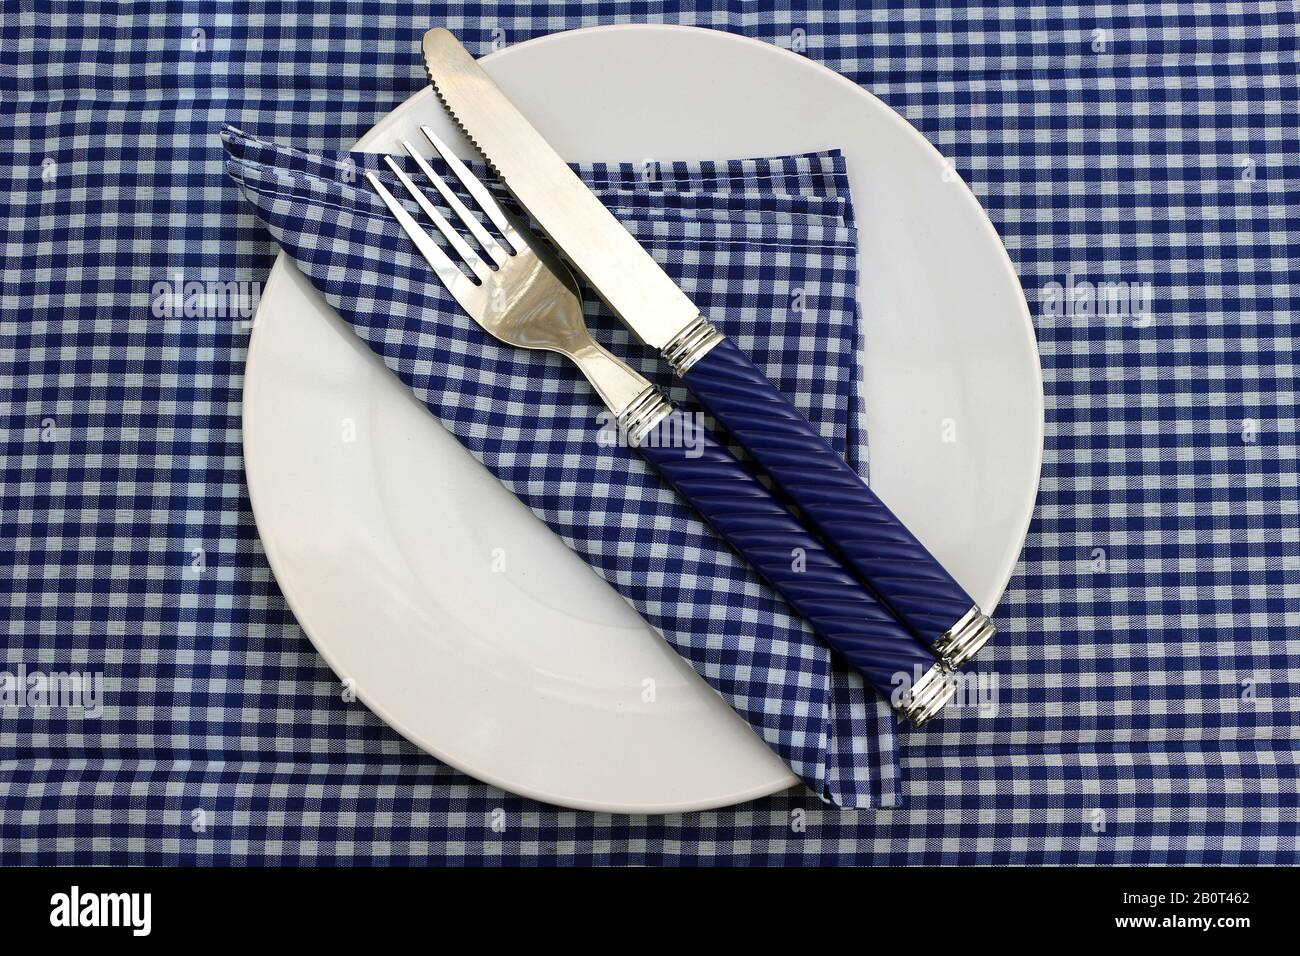 Eine weiße Platte mit Serviette und Messer und Gabel auf einem blauen Gingham Tischtuch Stockfoto